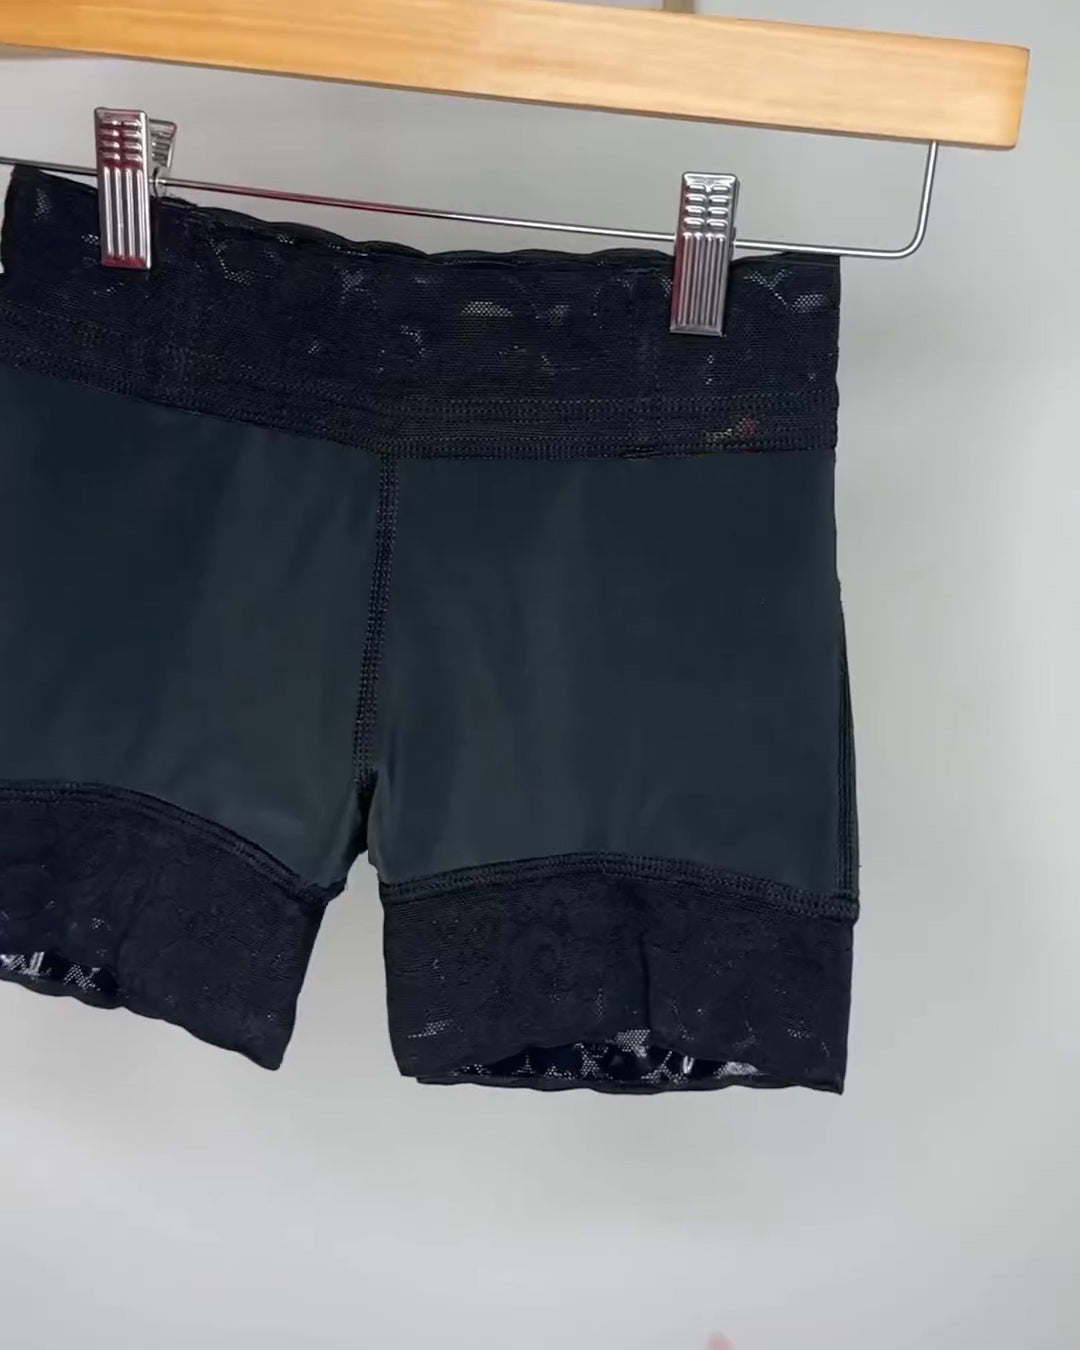 Seamless Butt Lift Shaper Shorts